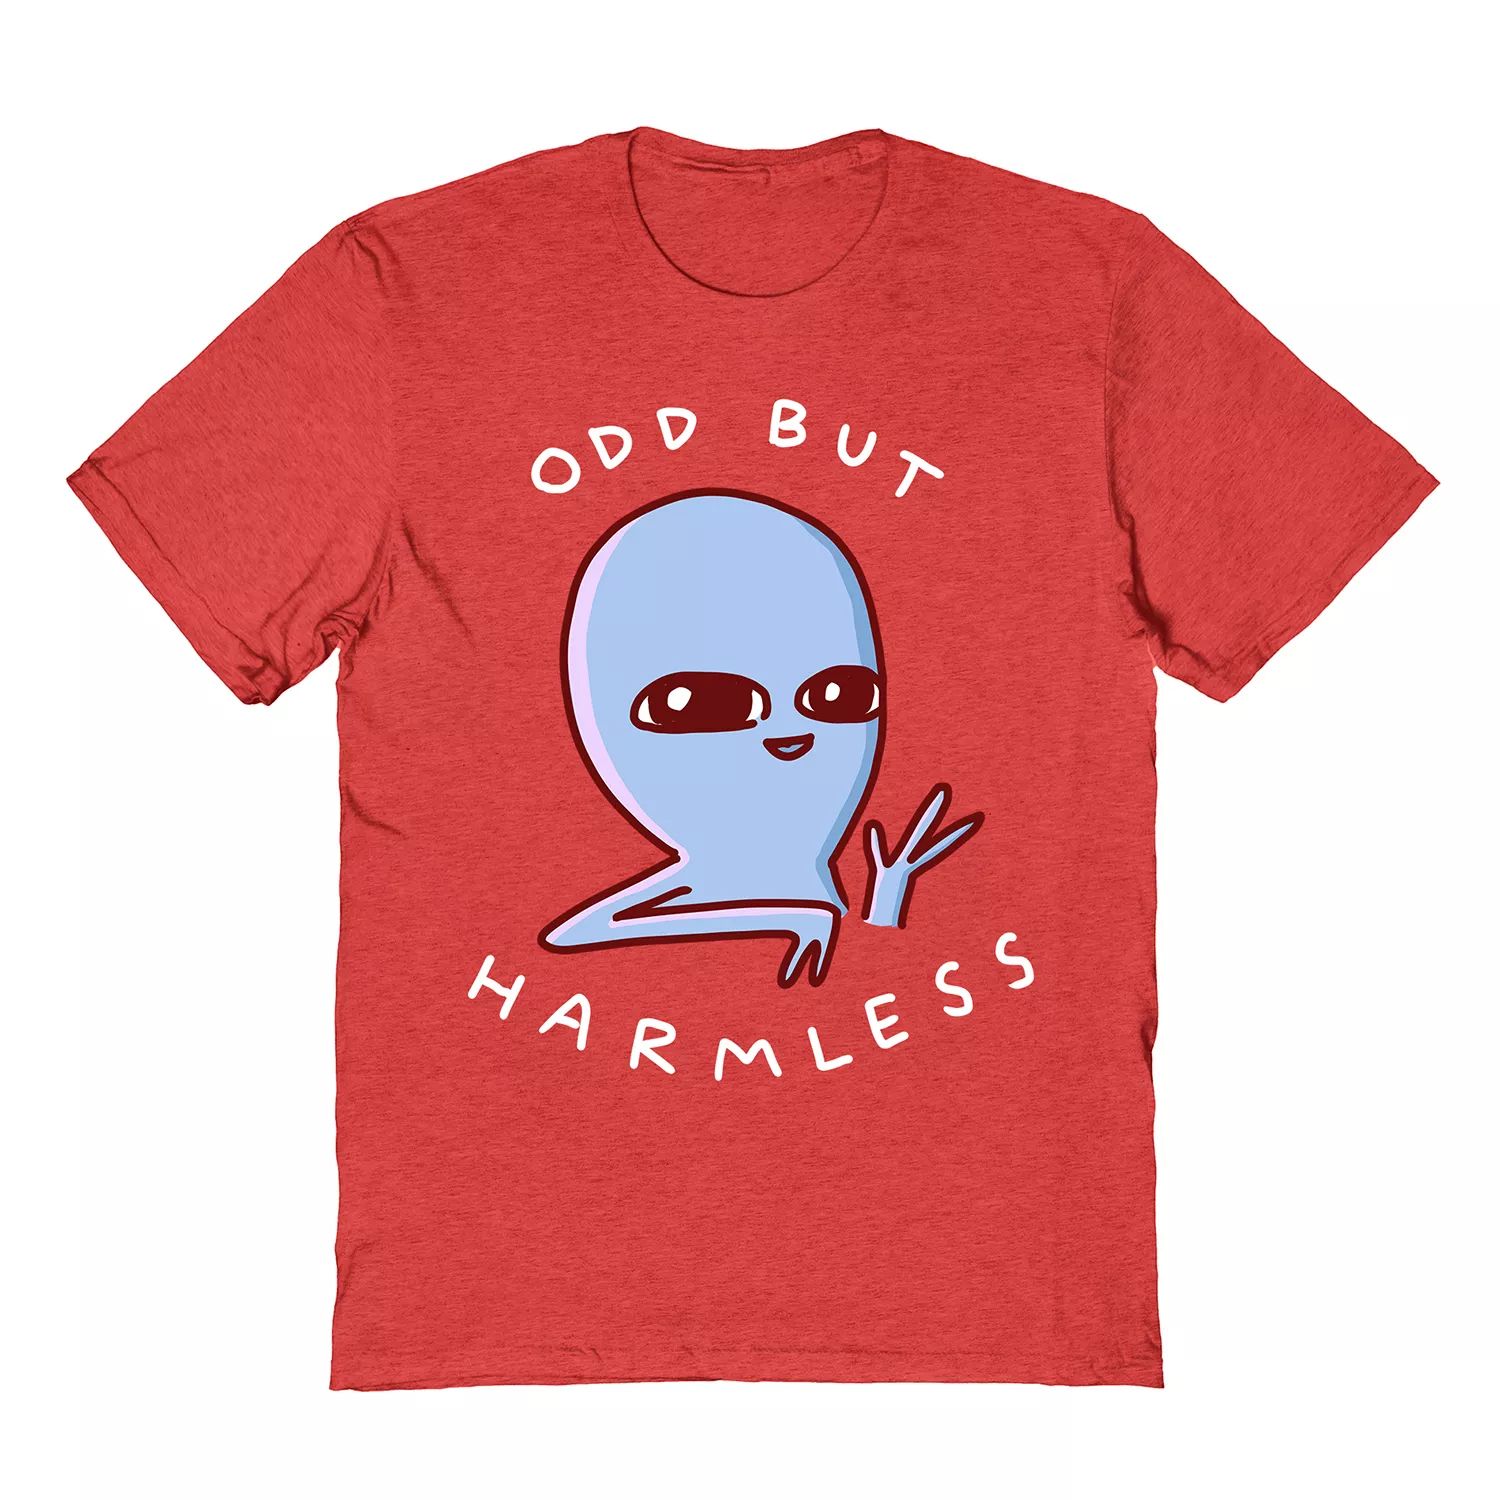 Мужская футболка Strange Planet от Nathan Pyle Odd But Harmless Tee COLAB89 by Threadless